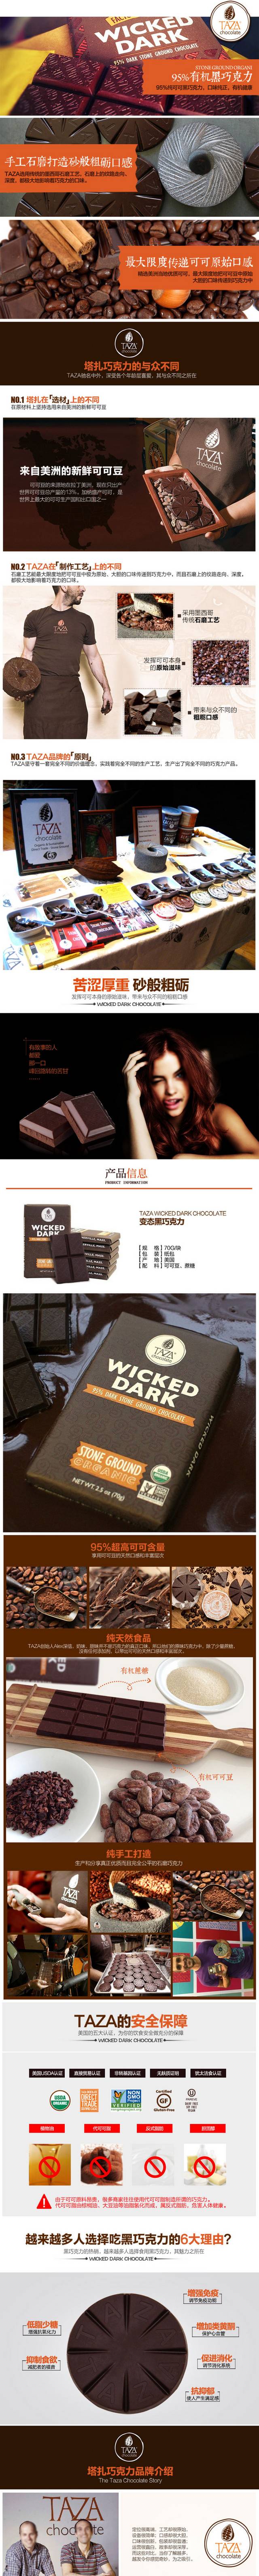 淘宝天猫巧克力详情页PSD素材模板下载